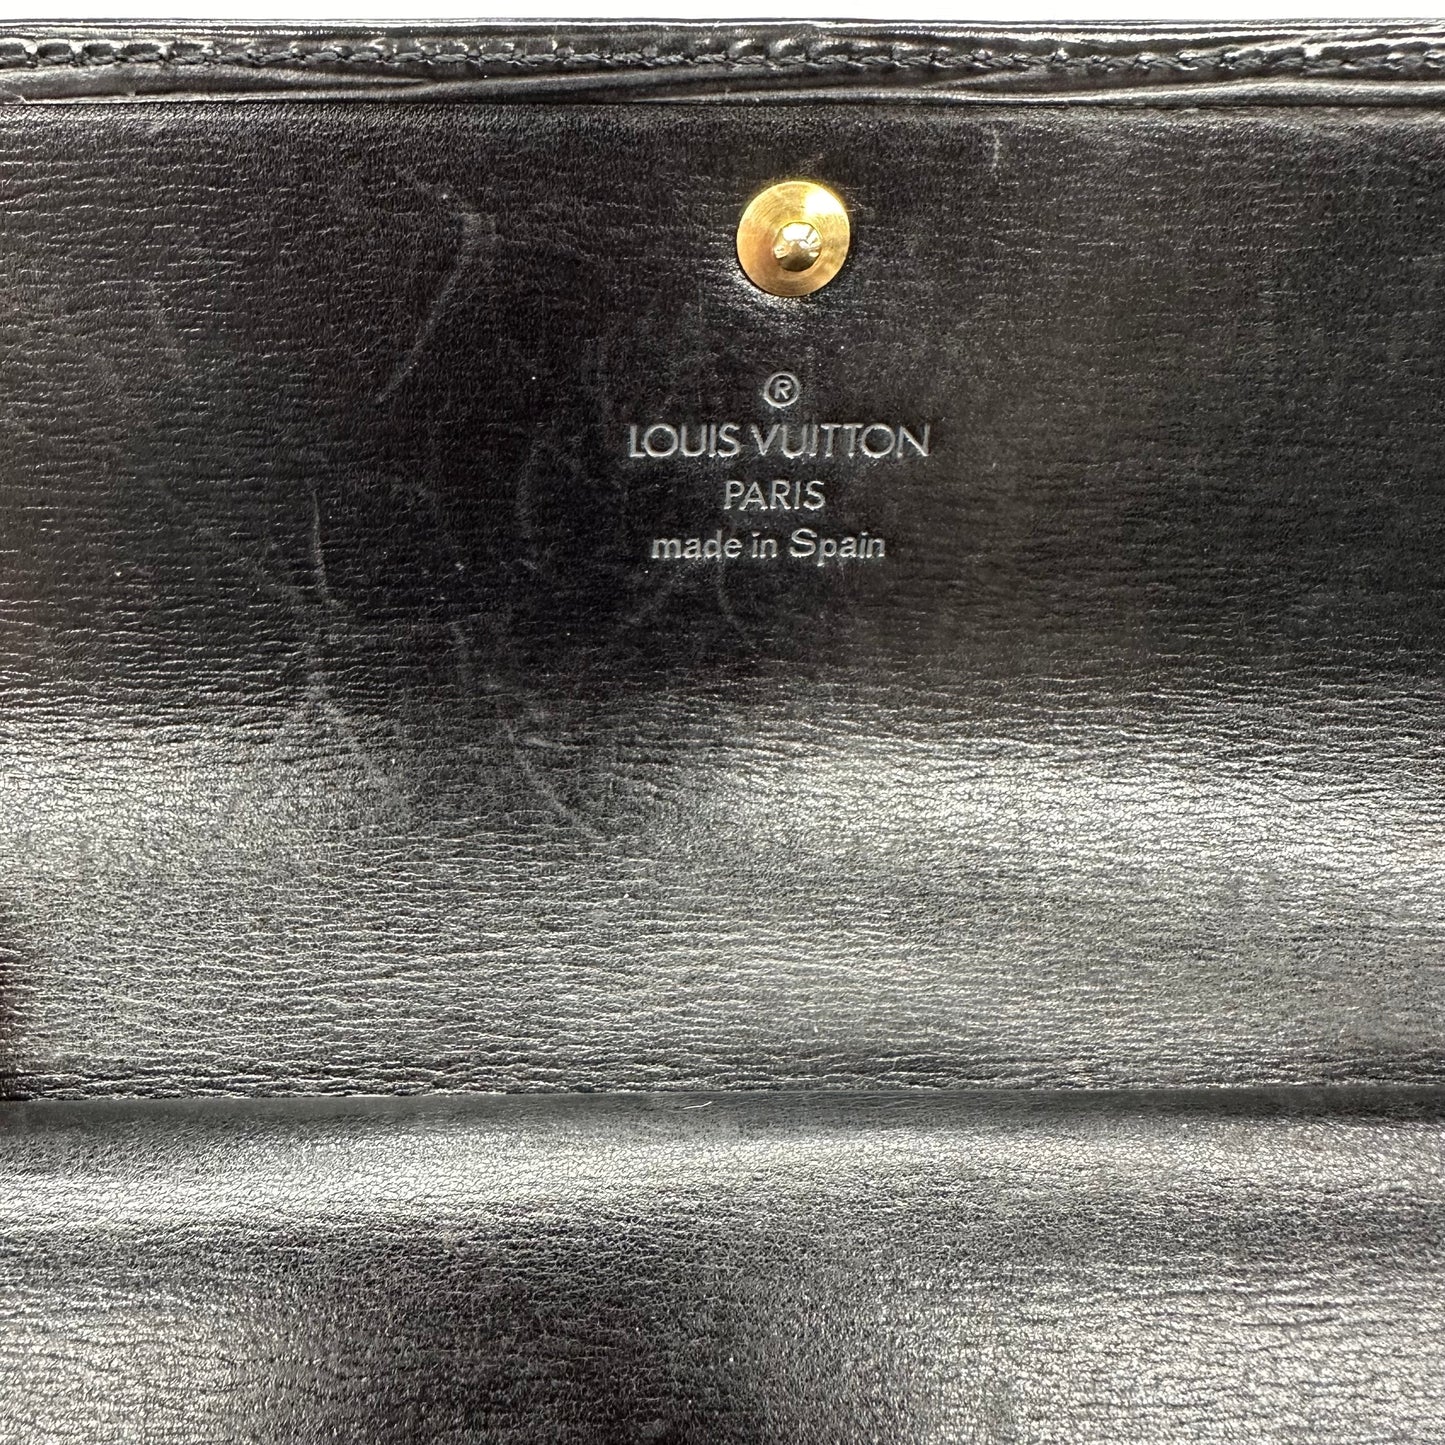 Wallet Luxury Designer By Louis Vuitton  Size: Medium